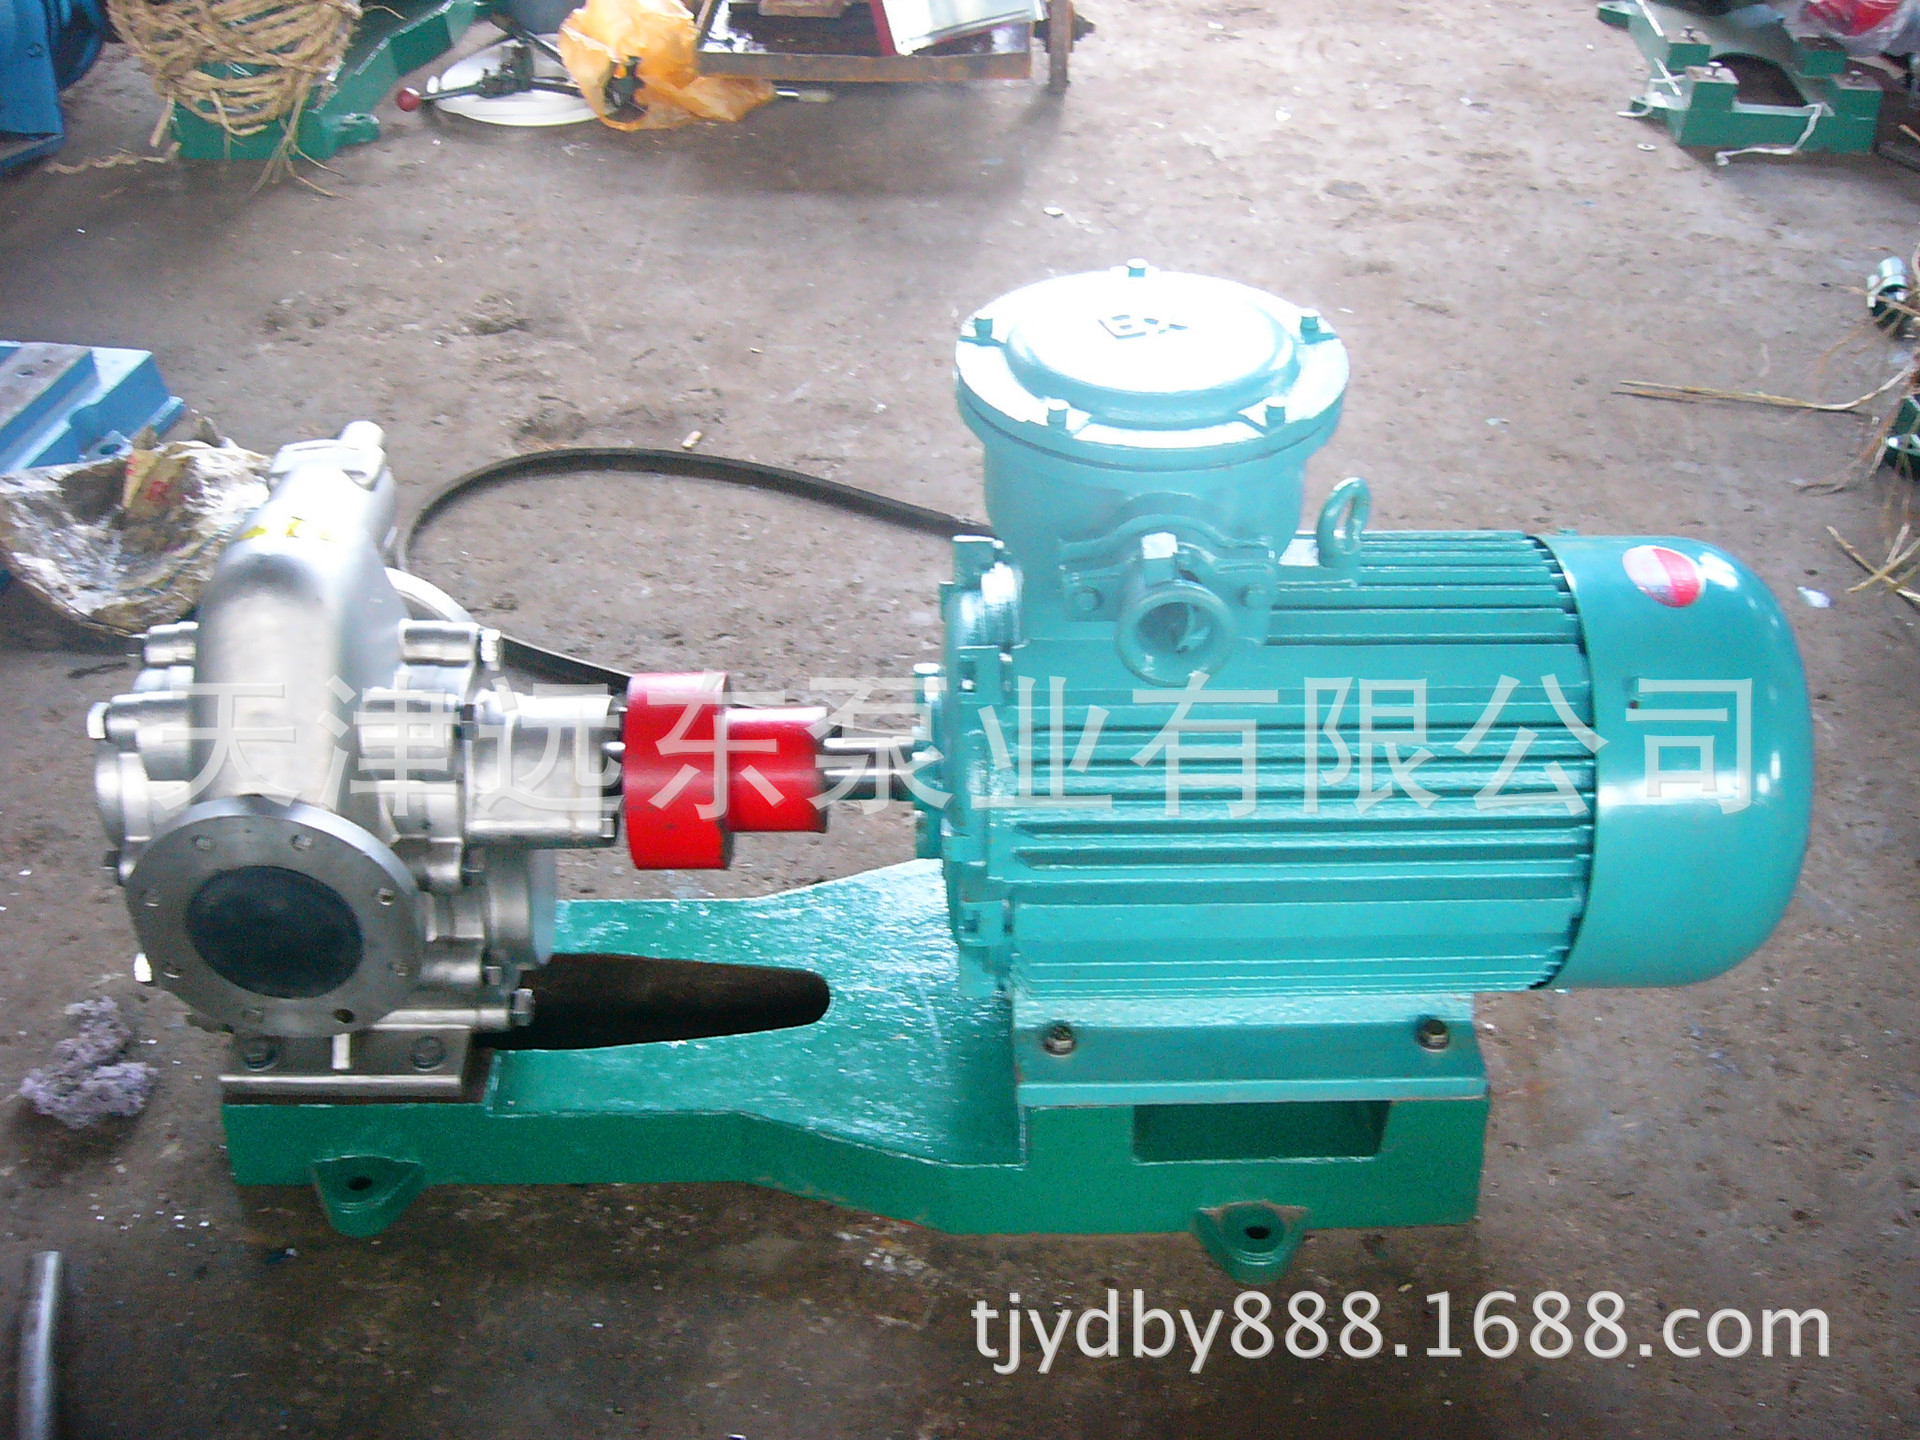 天津远东 KCB-633齿轮泵 高效率输油泵 耐腐蚀 化工溶剂泵示例图3